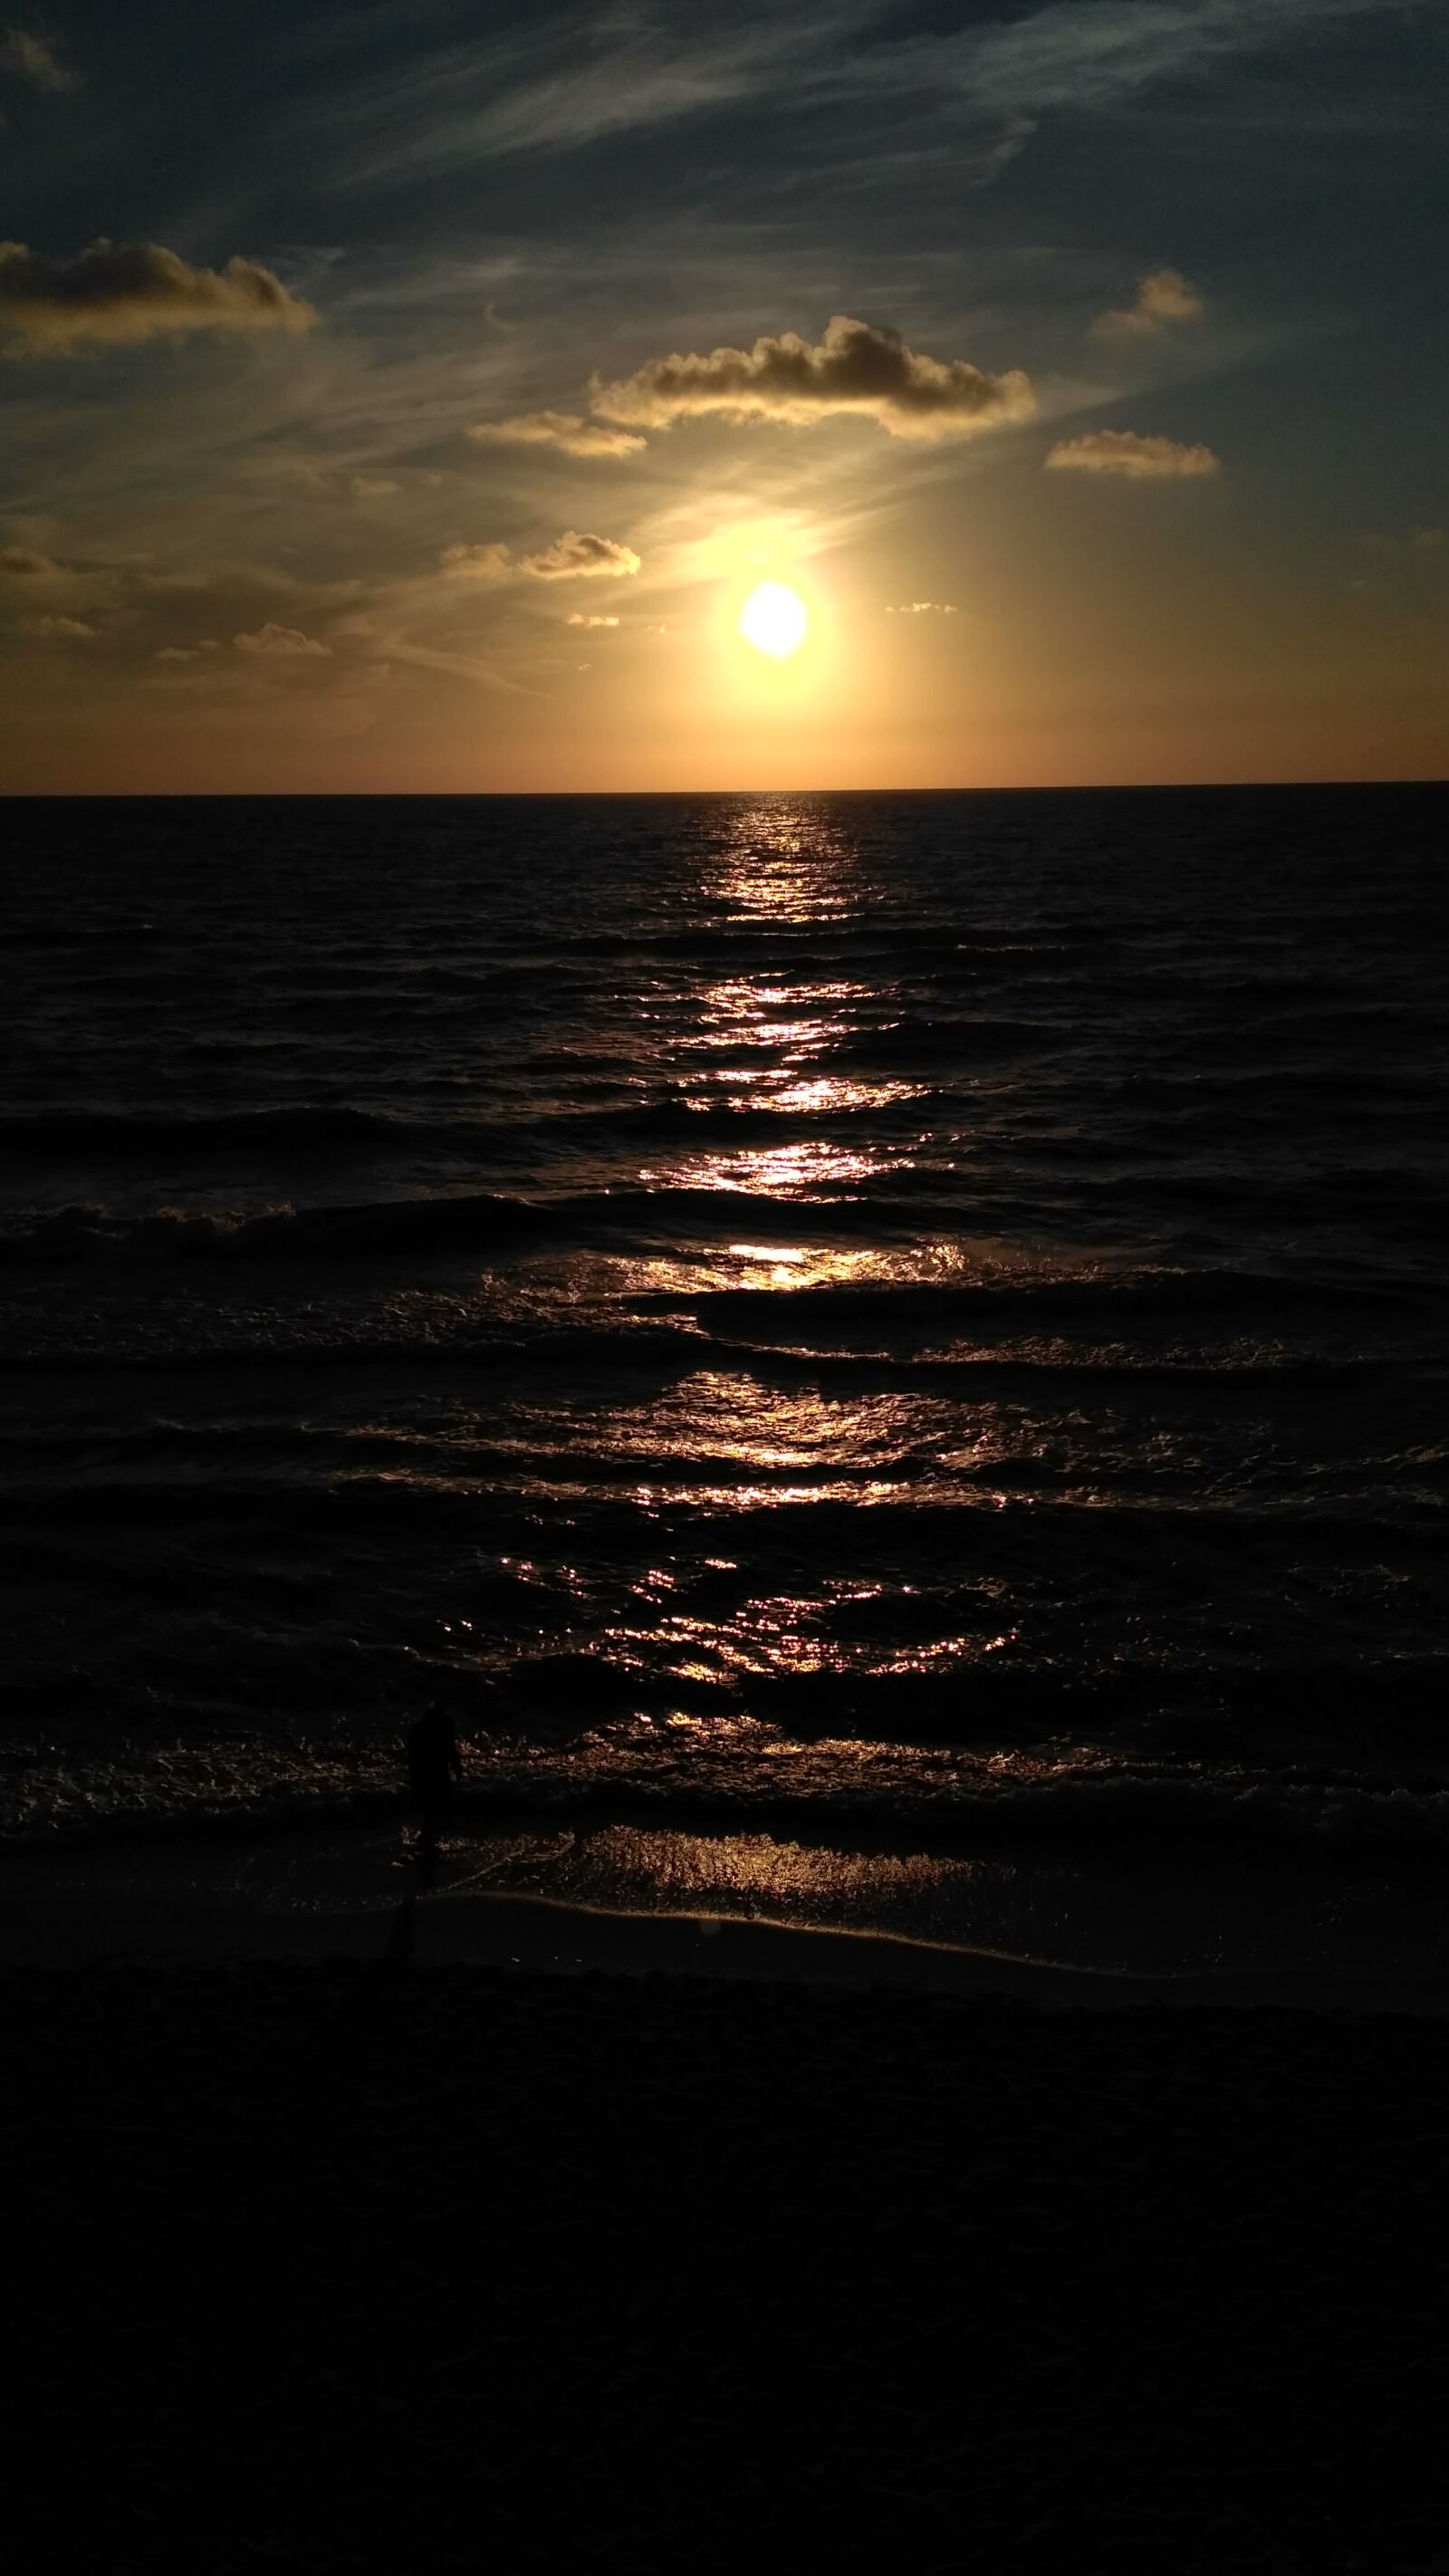 Xiaomi Redmi 3S sample photo. Dark, sea, sun, sunset photography